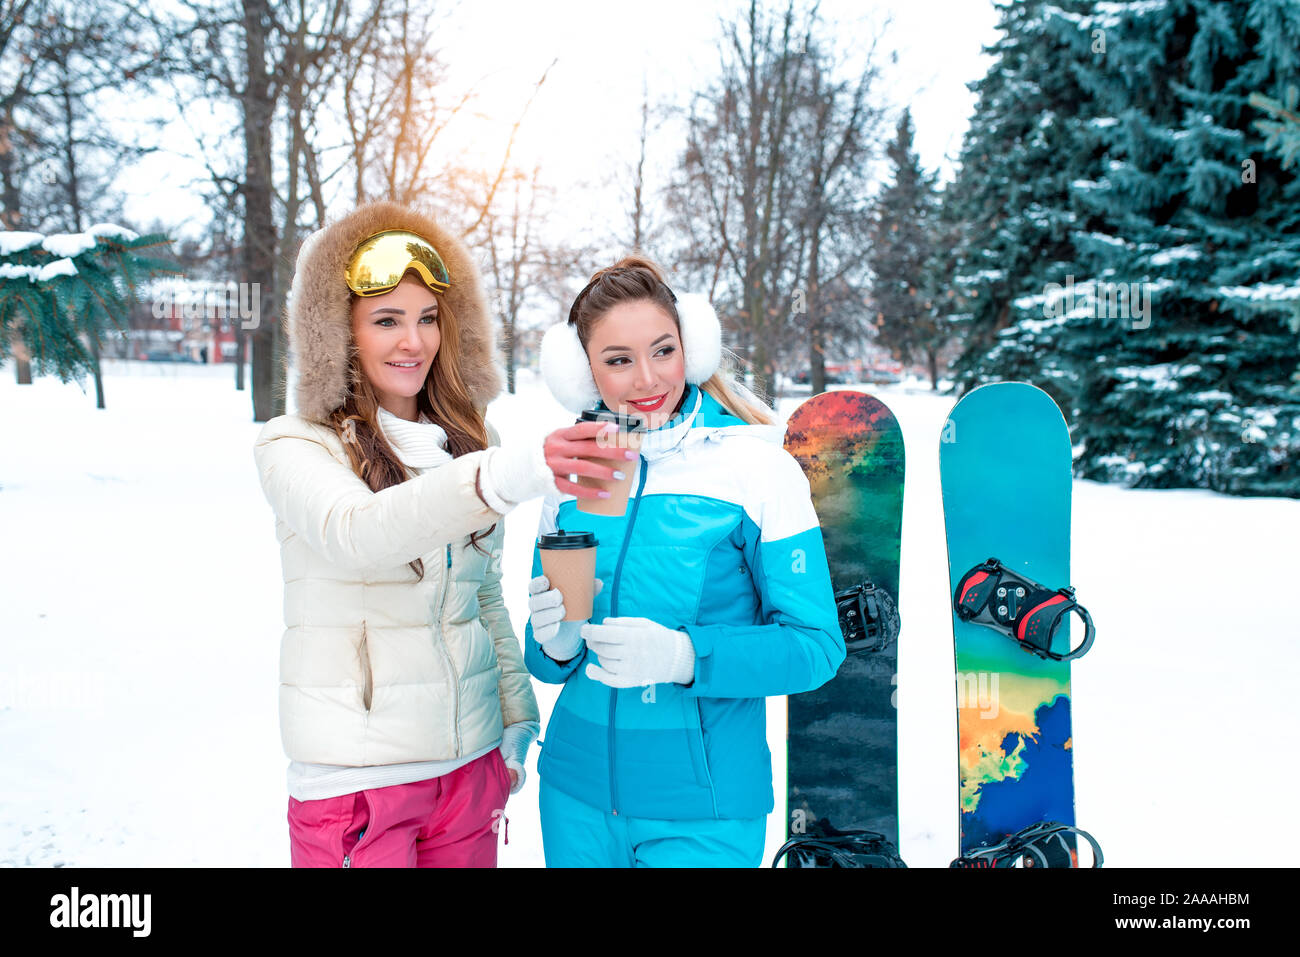 Zwei Mädchen Freundinnen Winter am Hang Resort, haben Rest Hände Gläser mit heißem Kaffee trinken Tee, glücklich lächelnde, kostenloses Open Space, snowboard Boards Stockfoto